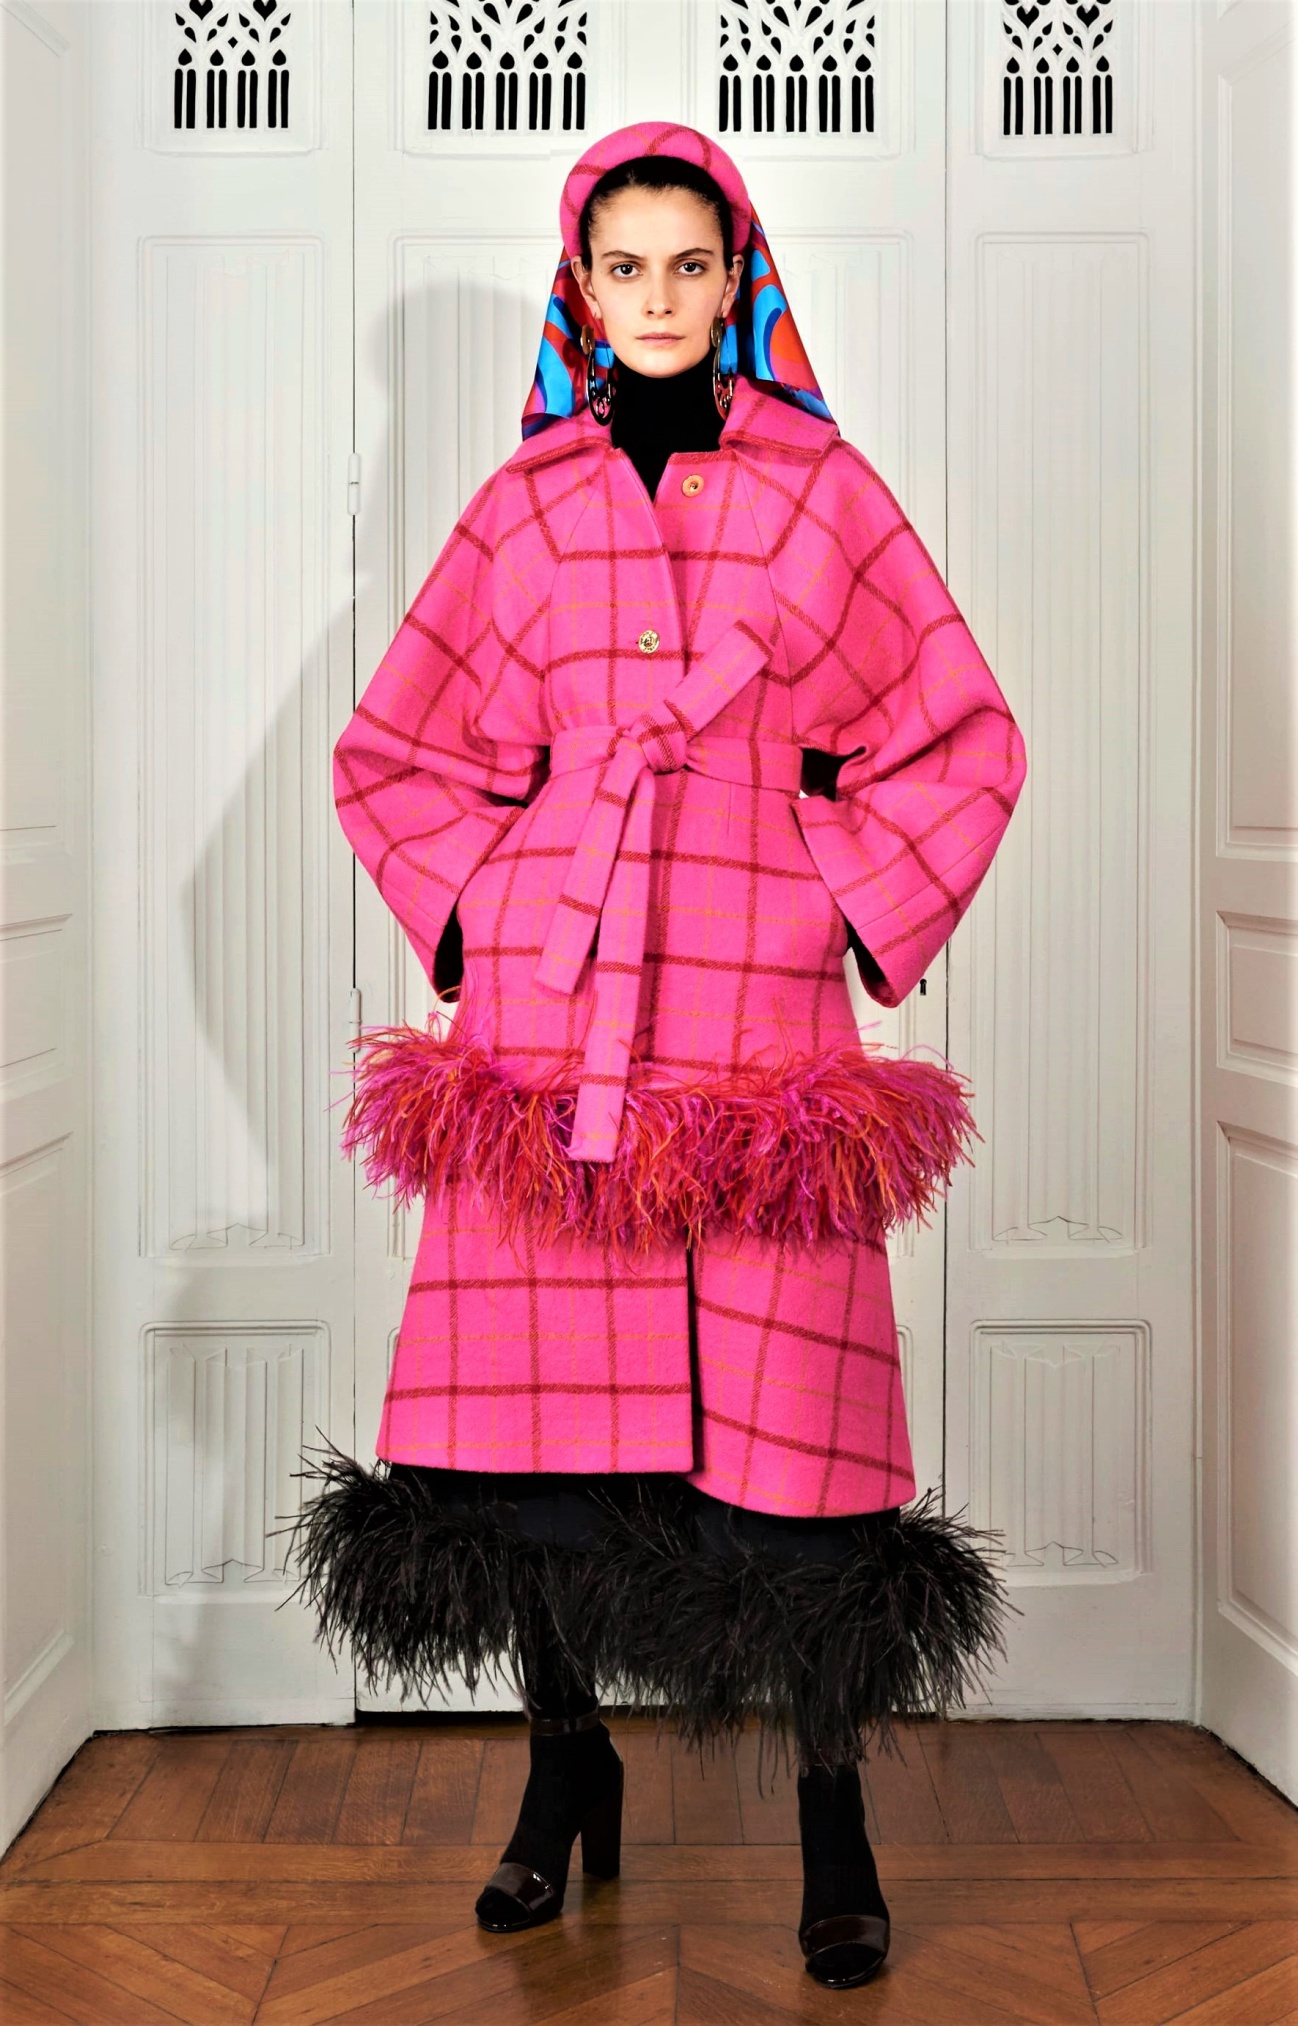 Paris 1 Patou pink coat Fed (2) cropped.jfif